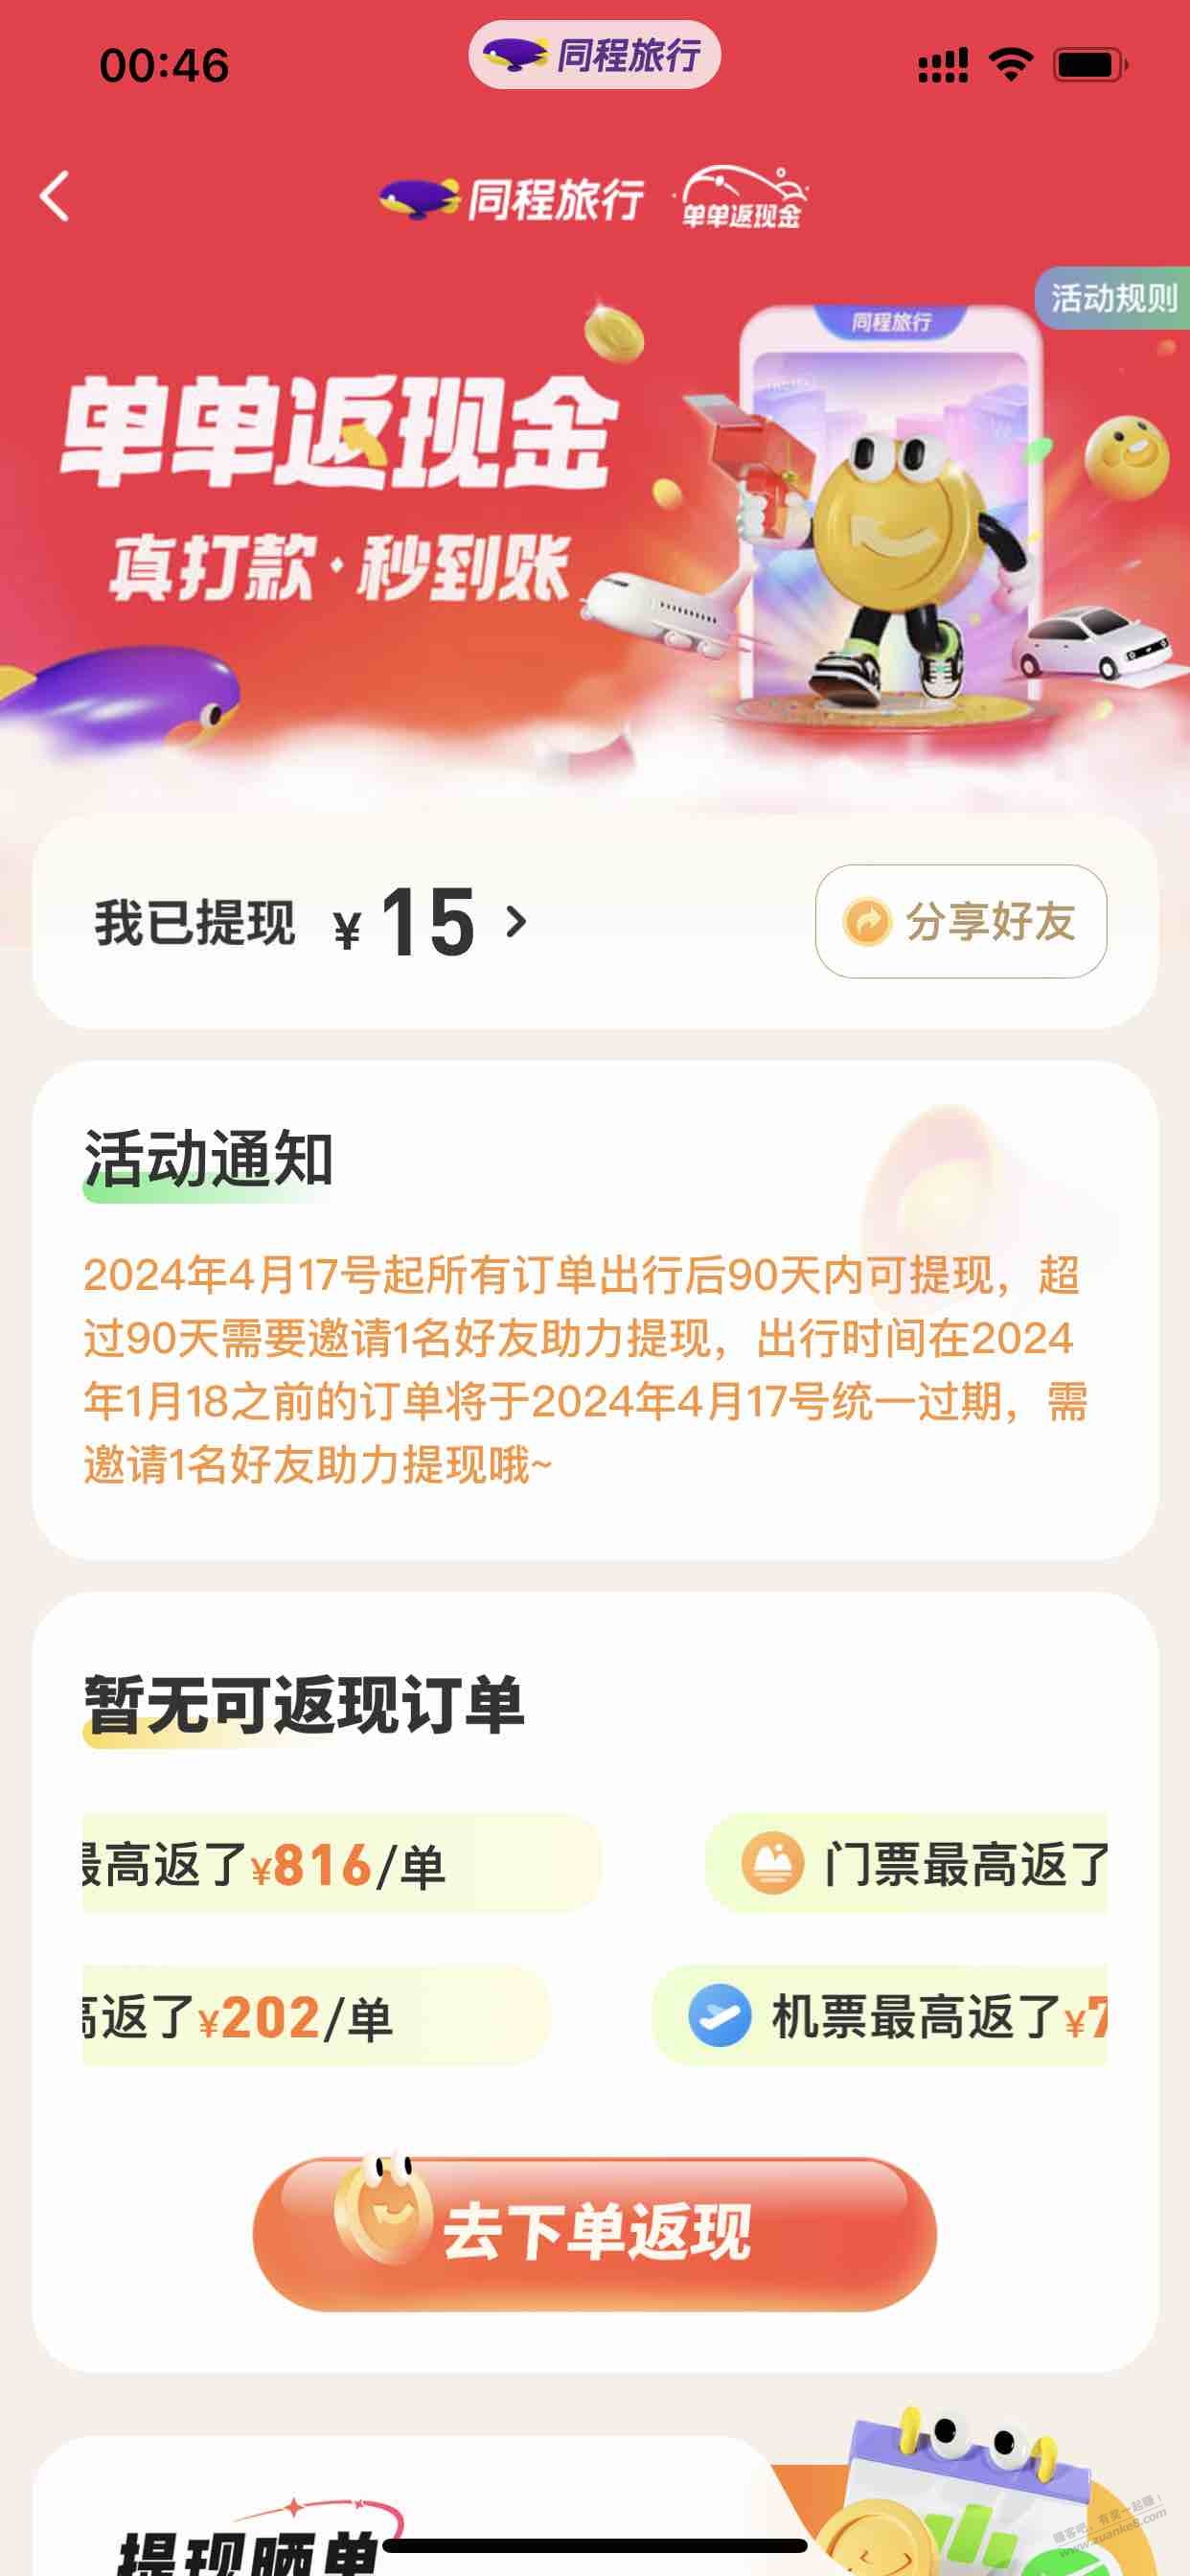 同程app大毛-购票订单返现金-app搜索返现金-惠小助(52huixz.com)